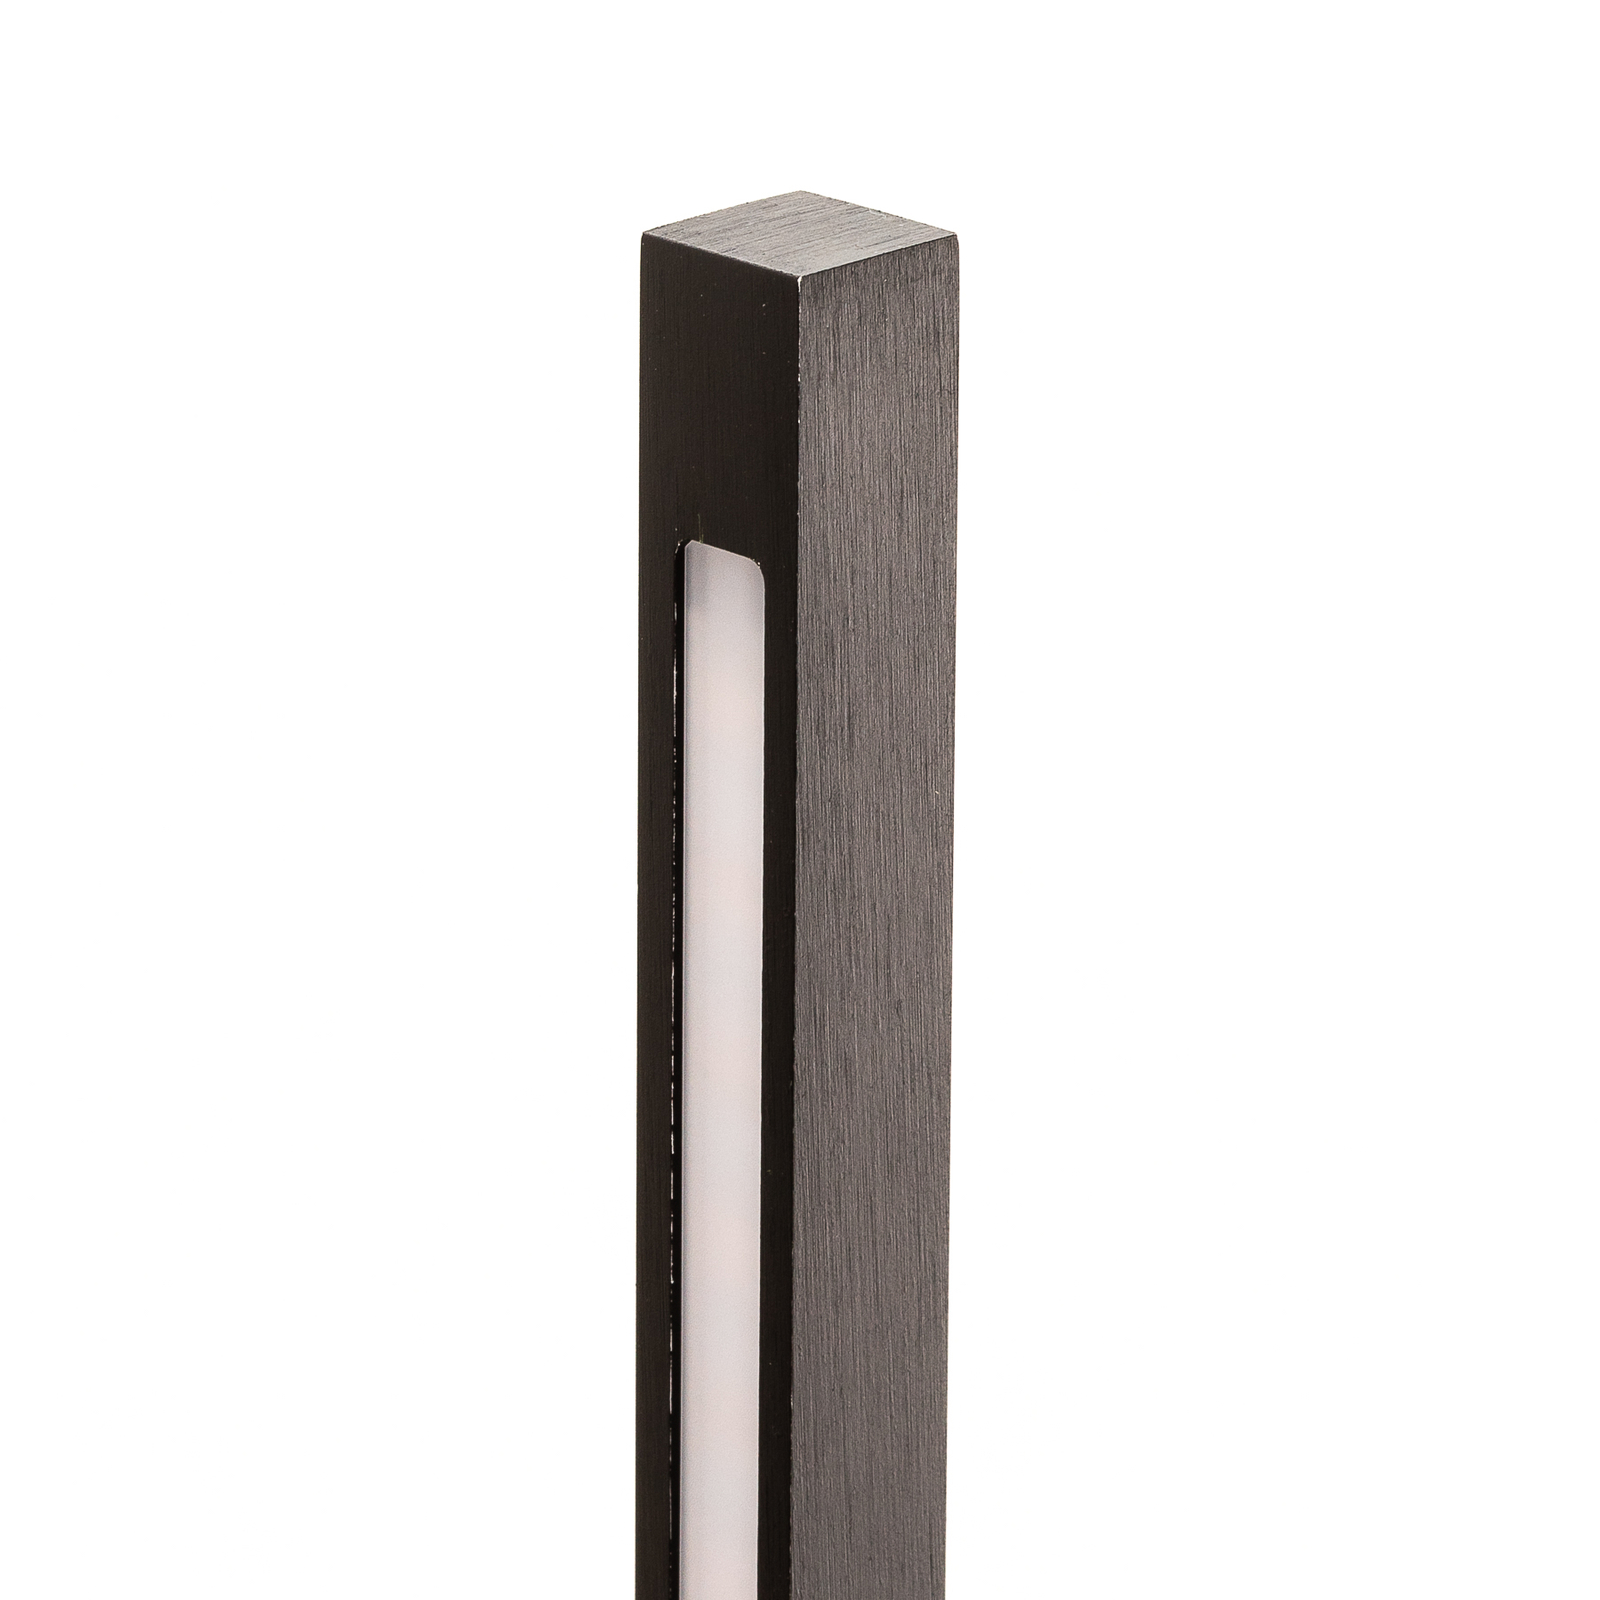 Quitani LED-vägglampa Tolu, vertikal, svart, höjd 45 cm